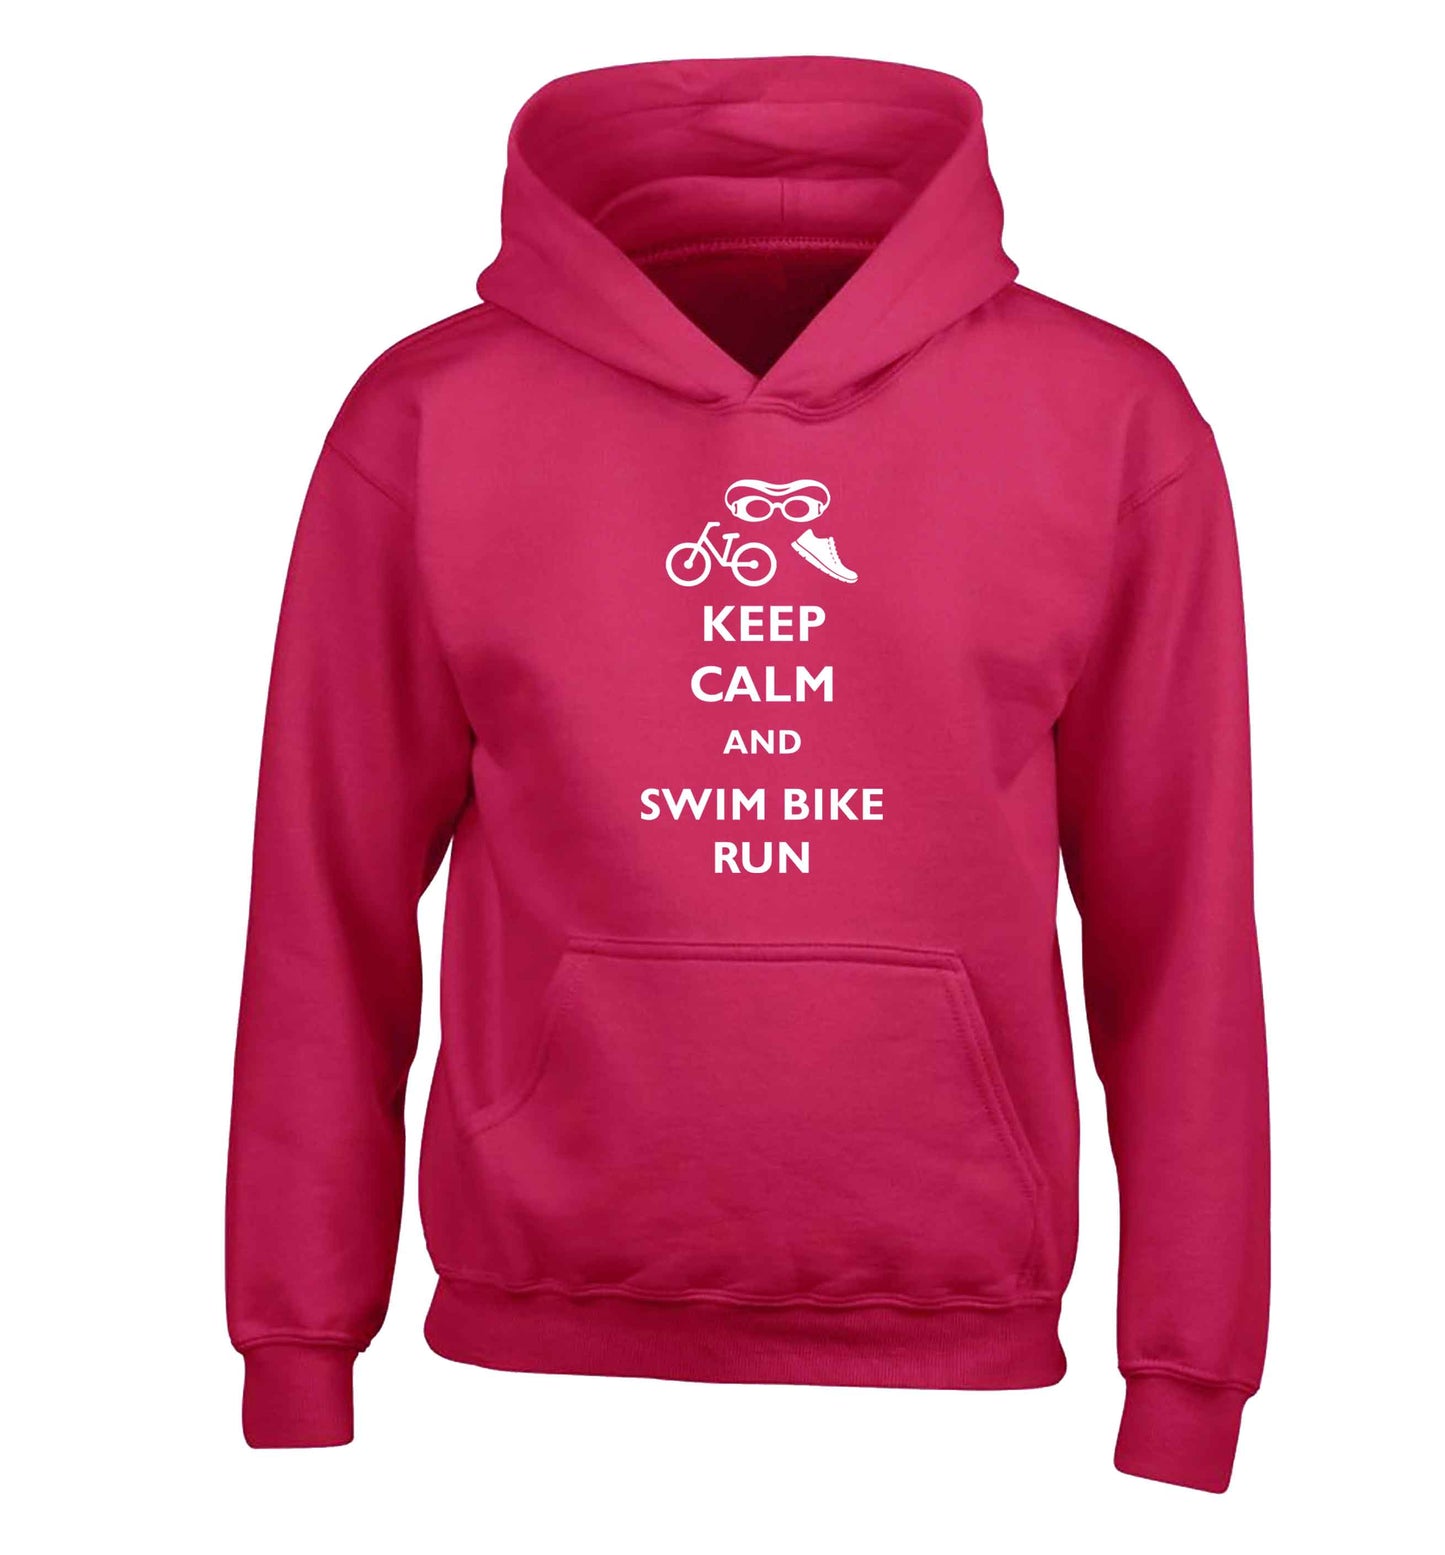 Keep calm and swim bike run children's pink hoodie 12-13 Years